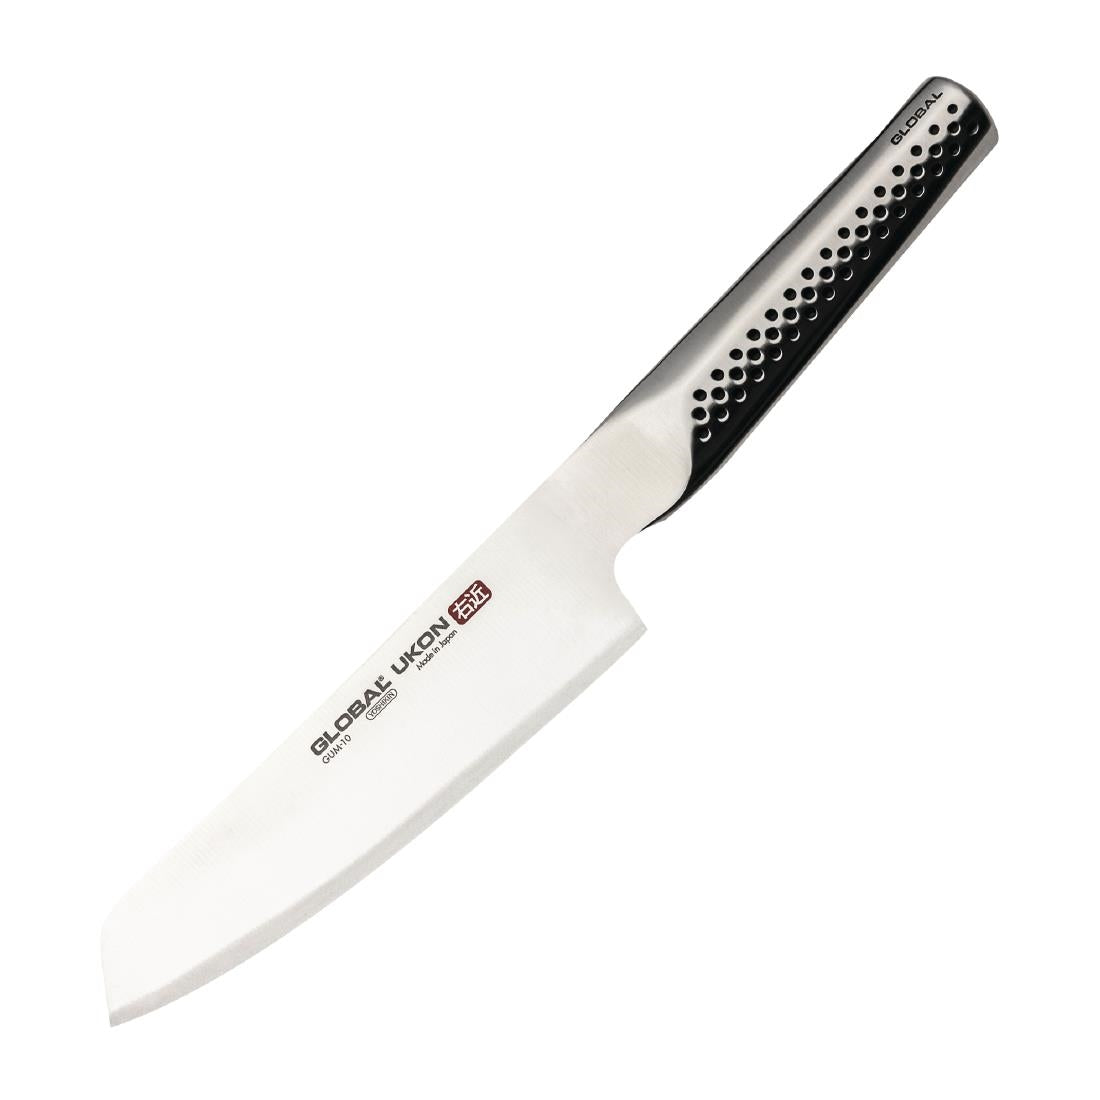 FX054 Global Knives Ukon Range Vegetable Knife 14cm JD Catering Equipment Solutions Ltd